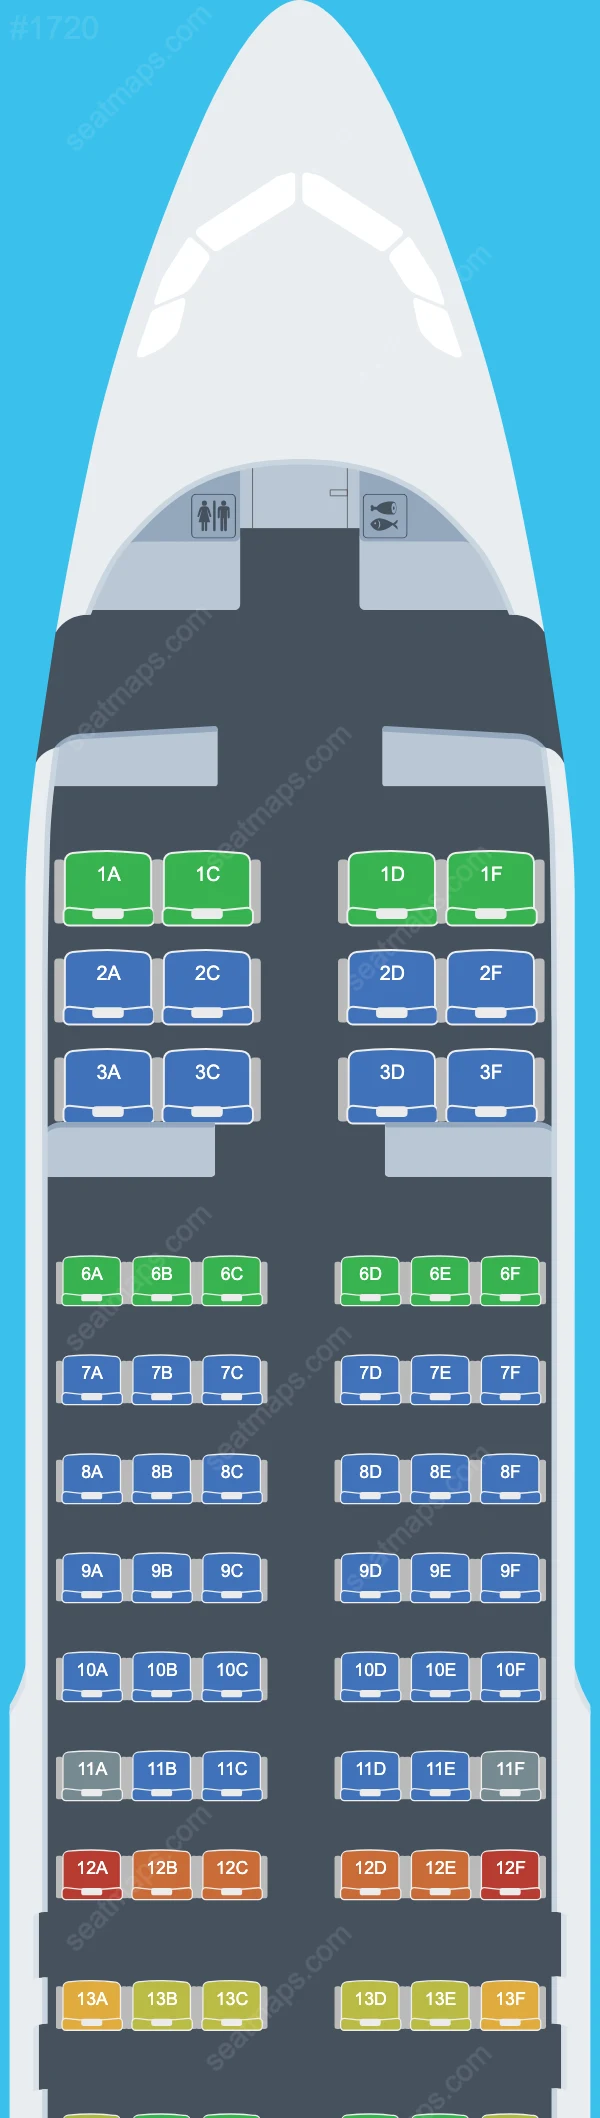 Aeroflot Airbus A320 Plan de Salle A320-200neo